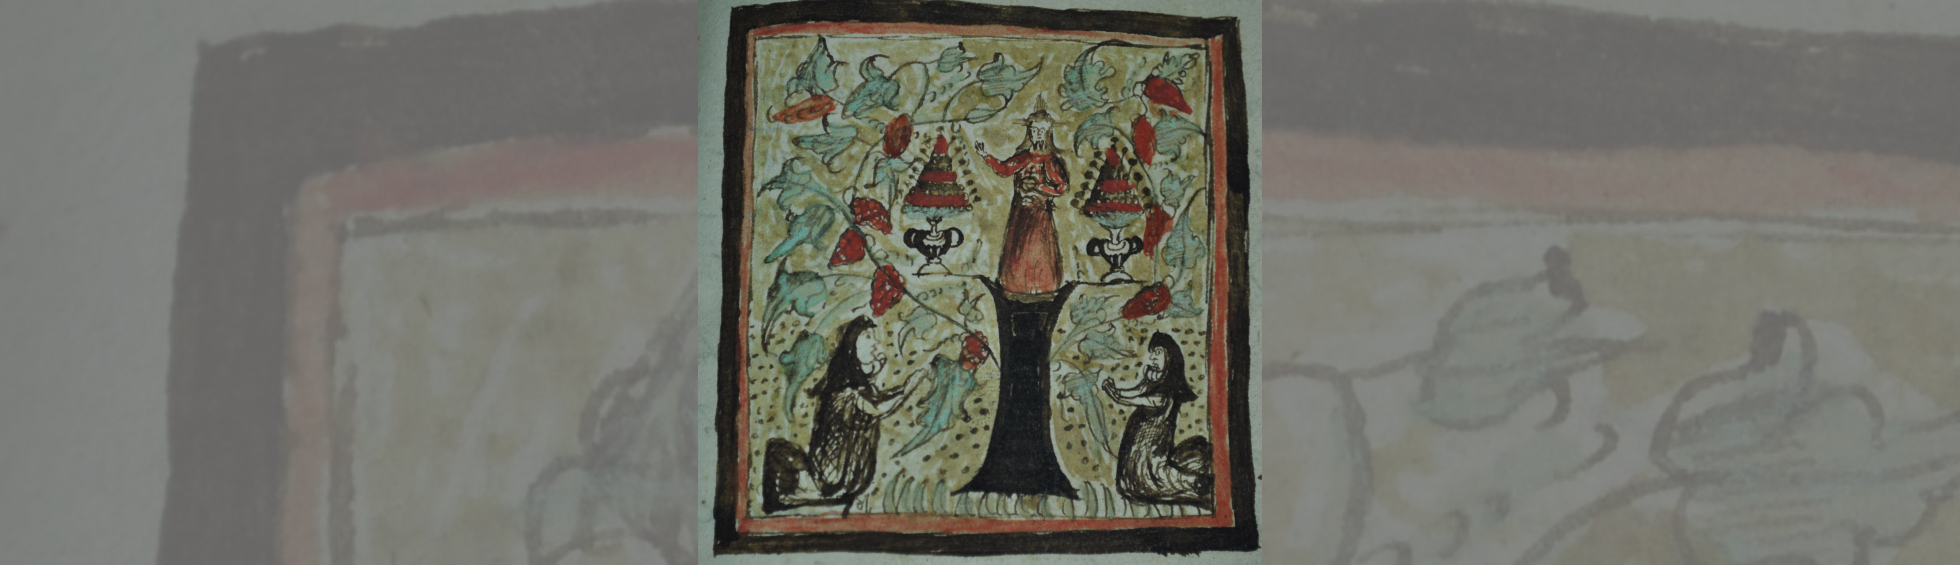 Lettre  I décorée : 2 Moniales entrain de prier au pied de Jésus monté sur la lettre I,décors de vigne avec grappes,